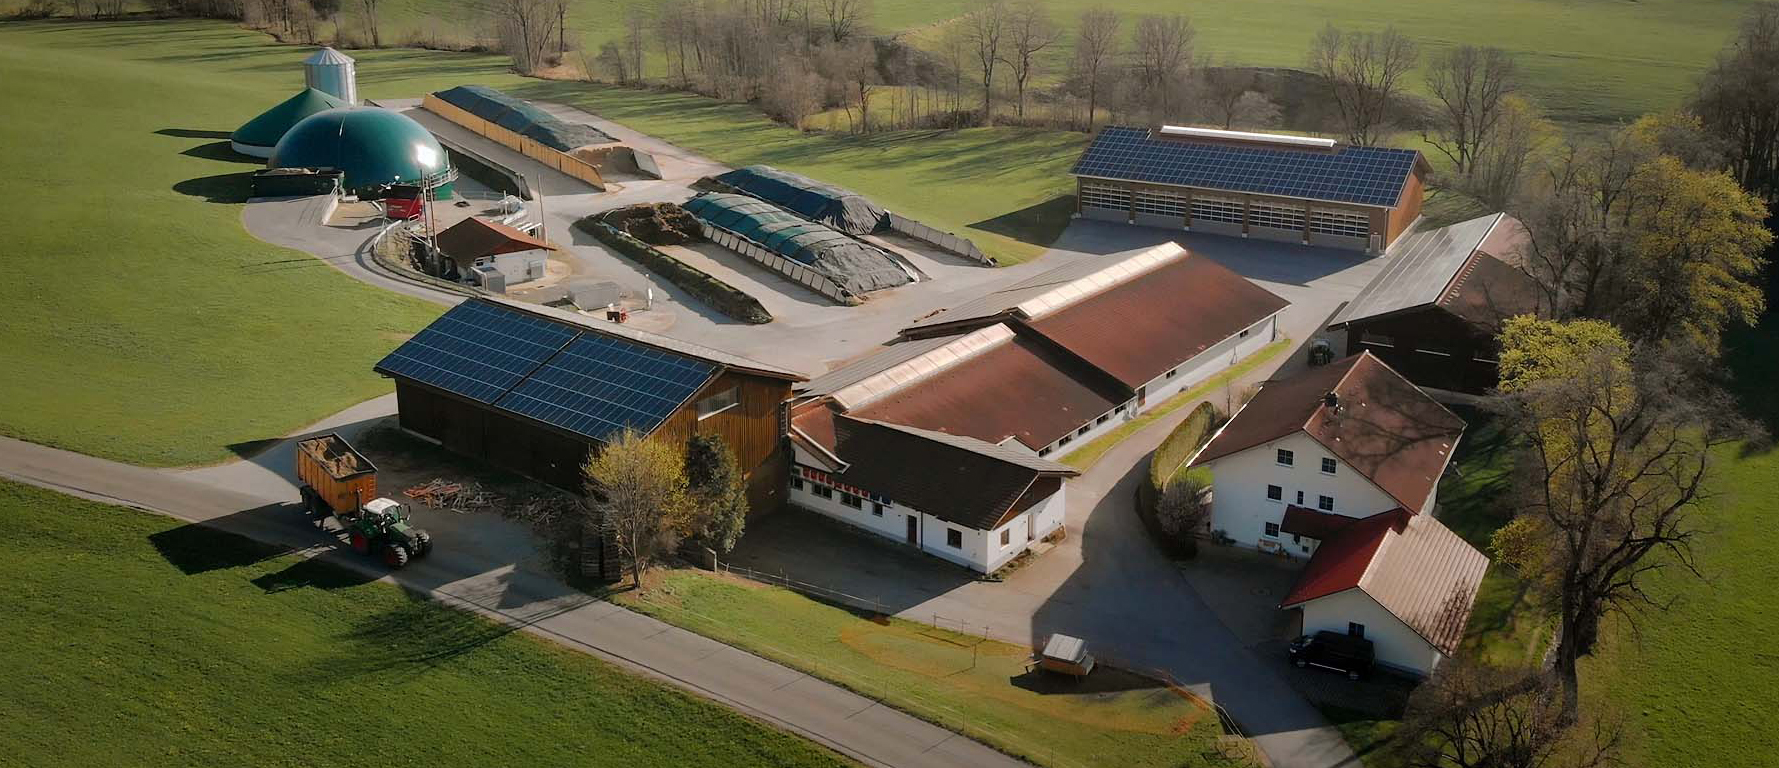 Gewerbespeicher, Luftbild eines Bauernhofs mit Wohnhaus, mehreren Ställen und Schäunen, Lagerflächen und Biogasanlage. Viele Dachflächen sind mit Solarmodulen belegt. Foto: SMA 